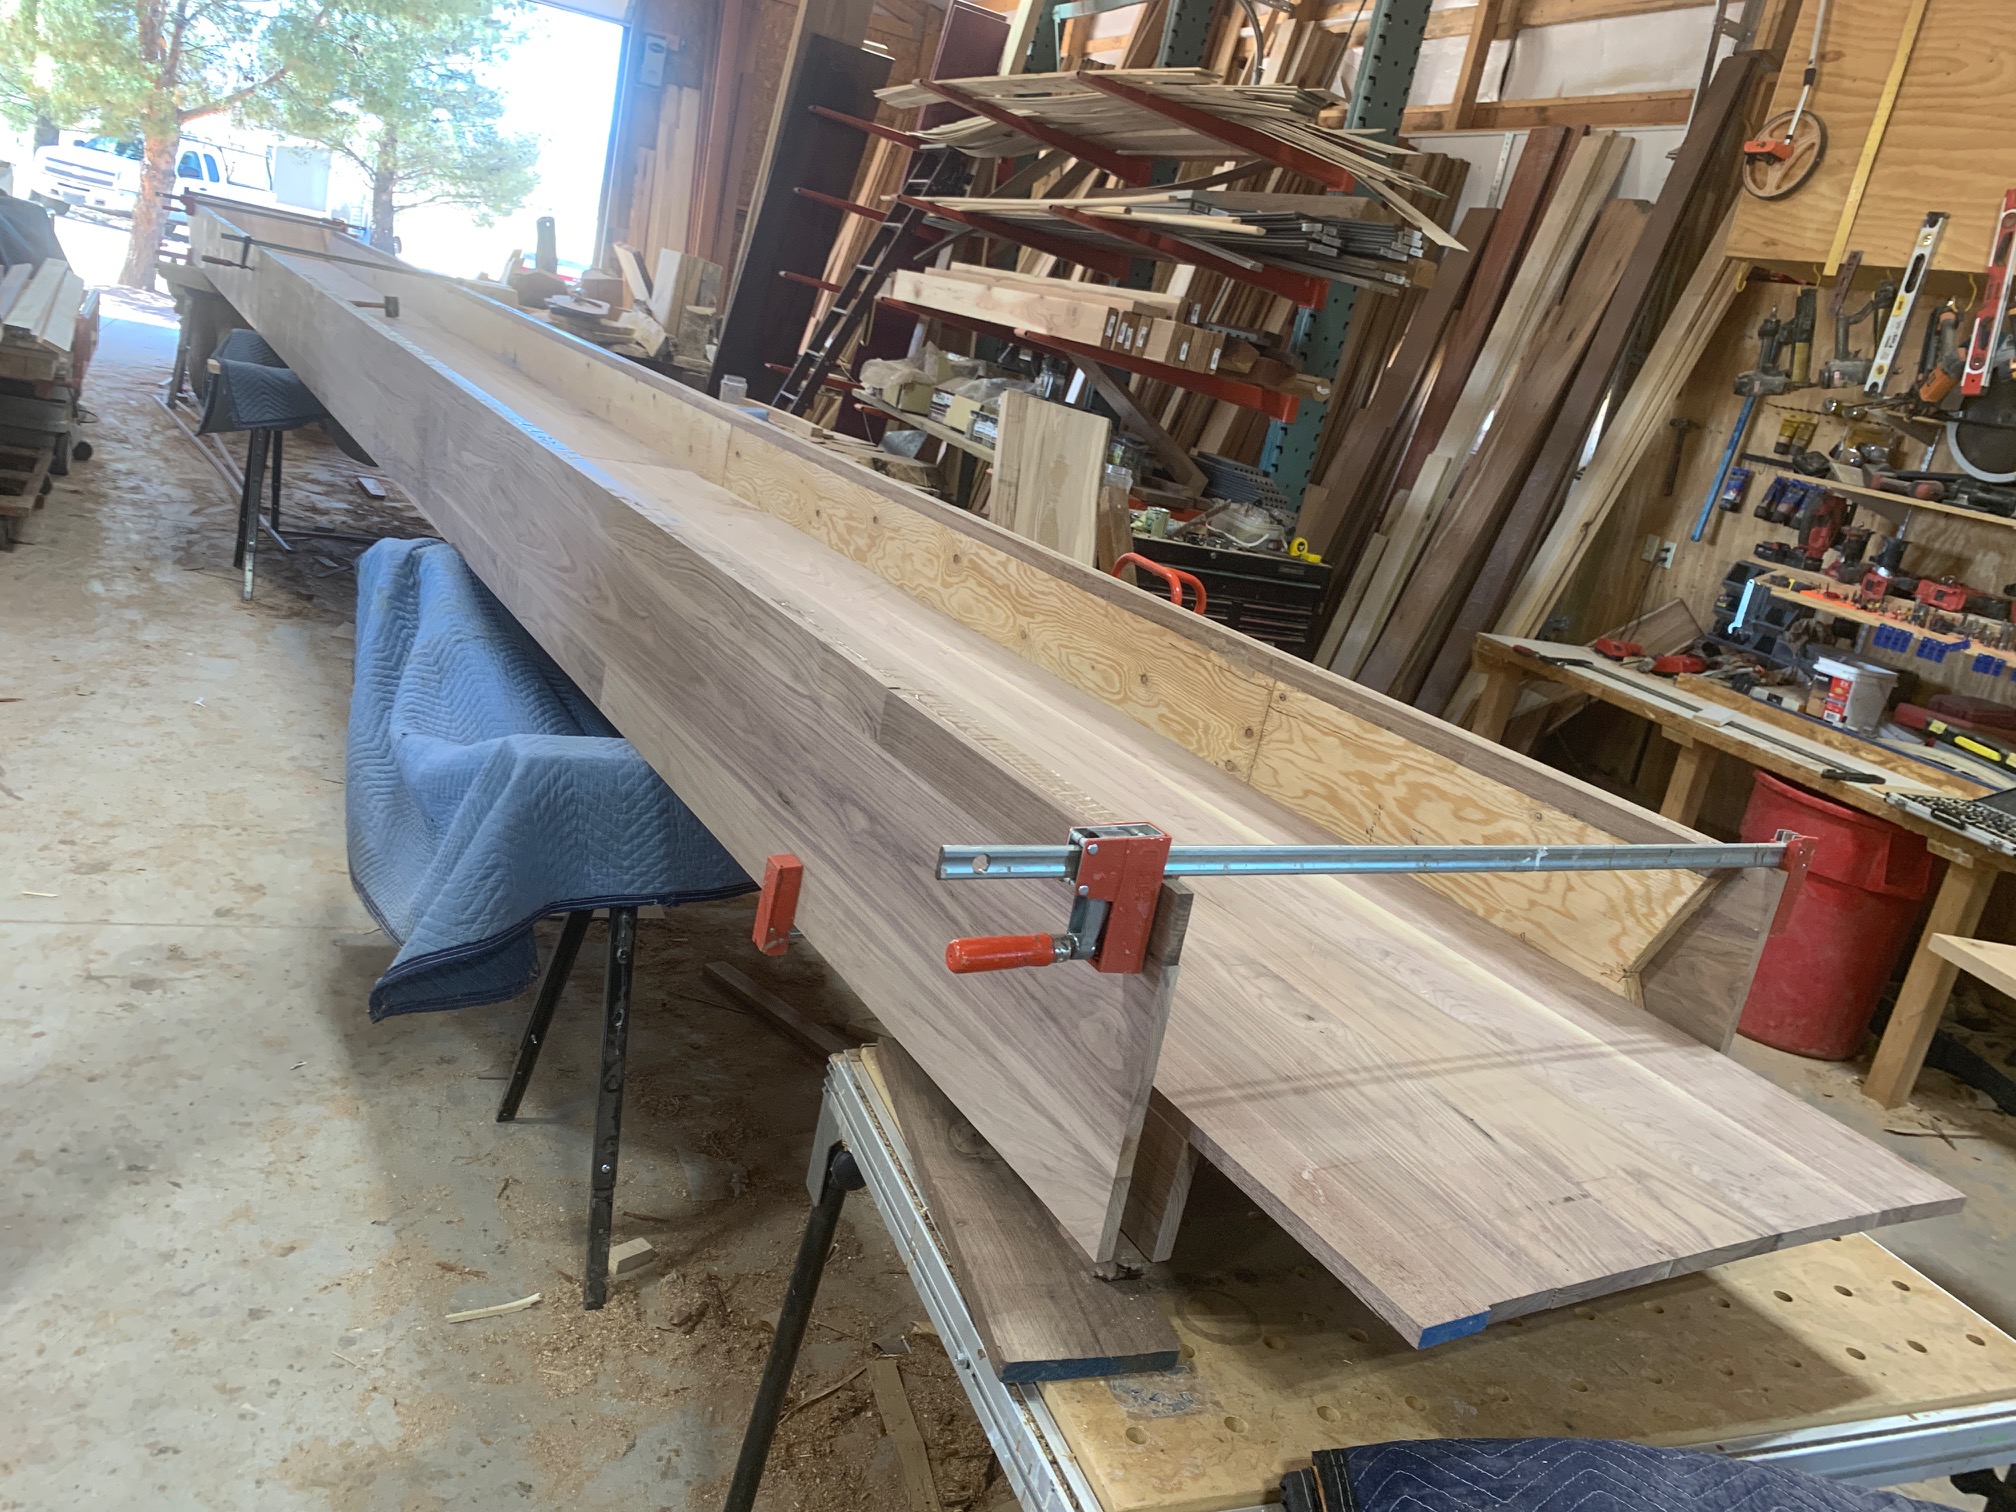 Wooden slide in progress